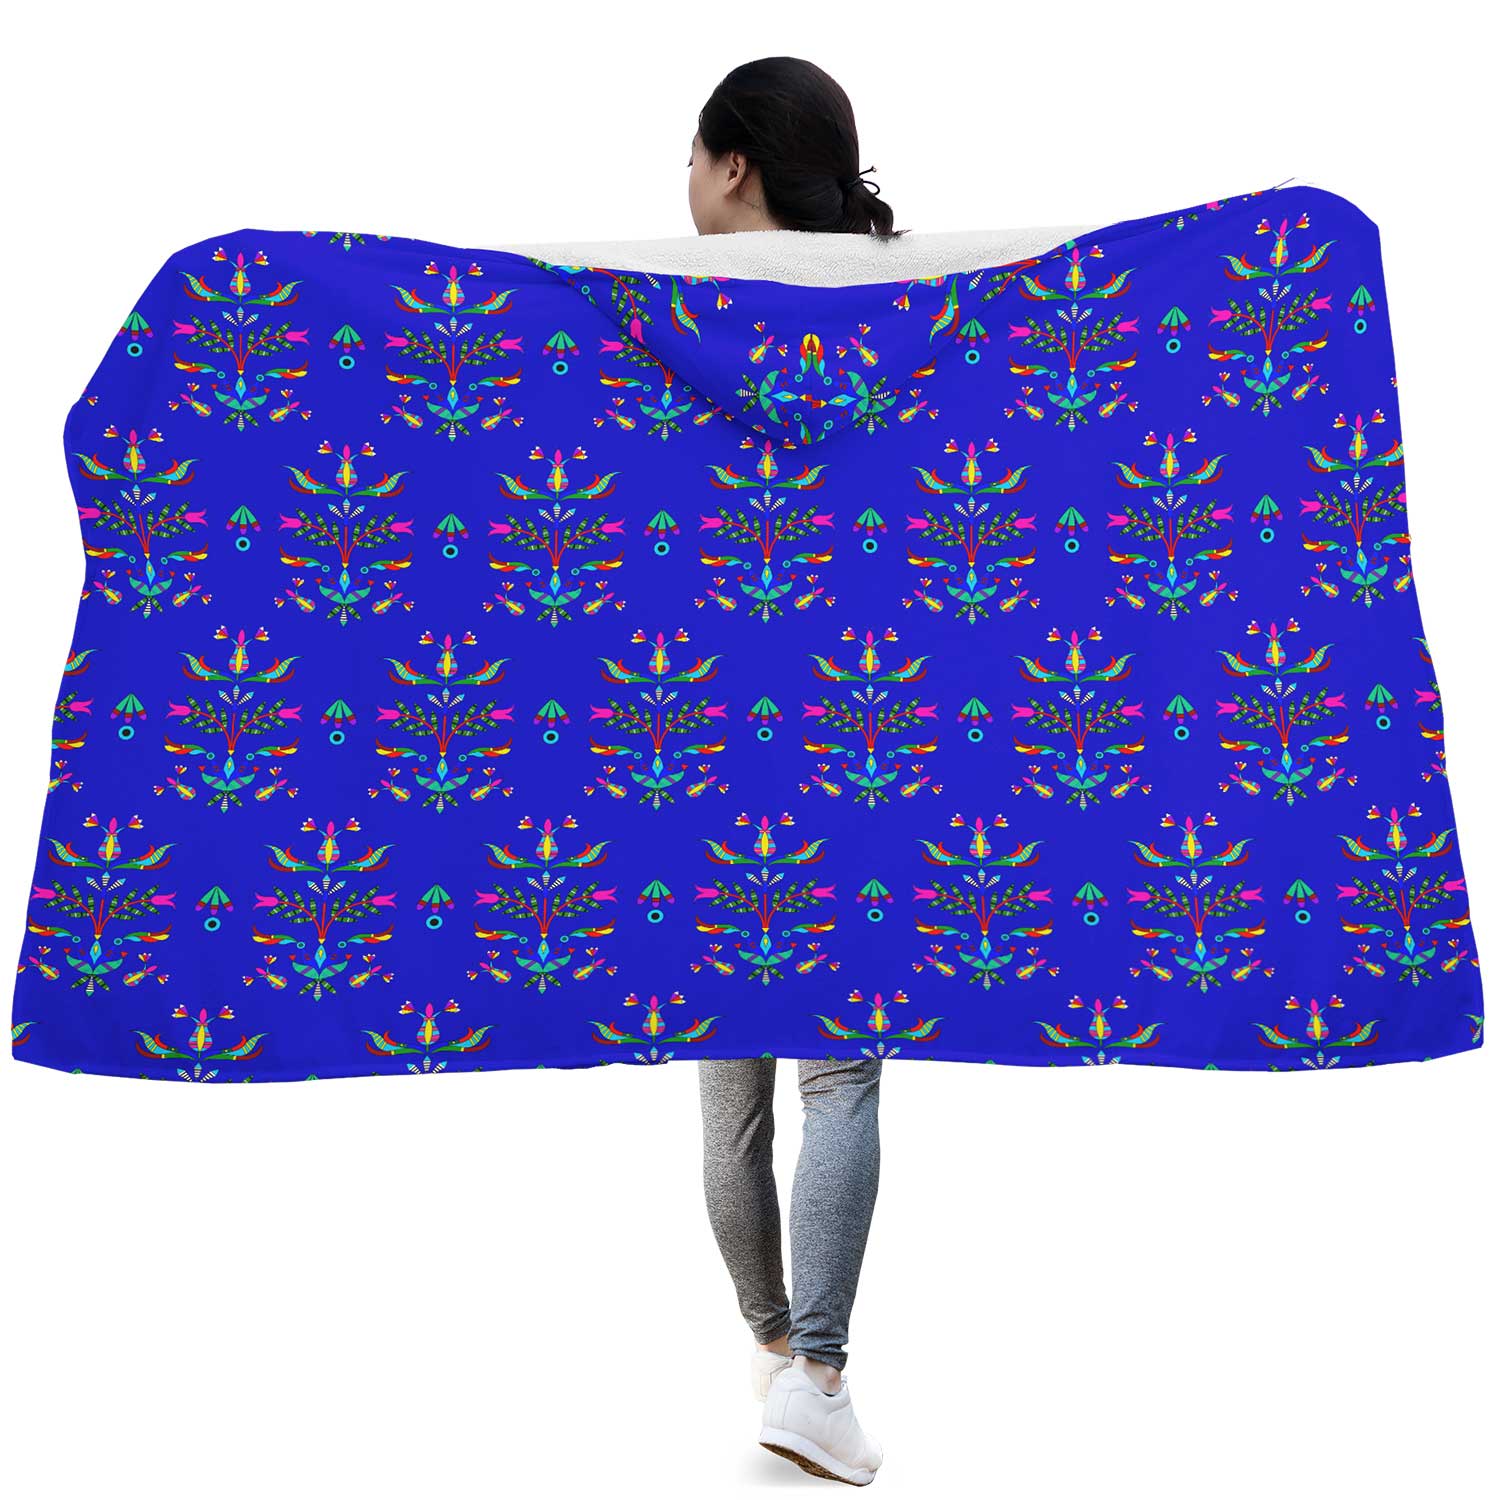 Dakota Damask Blue Hooded Blanket